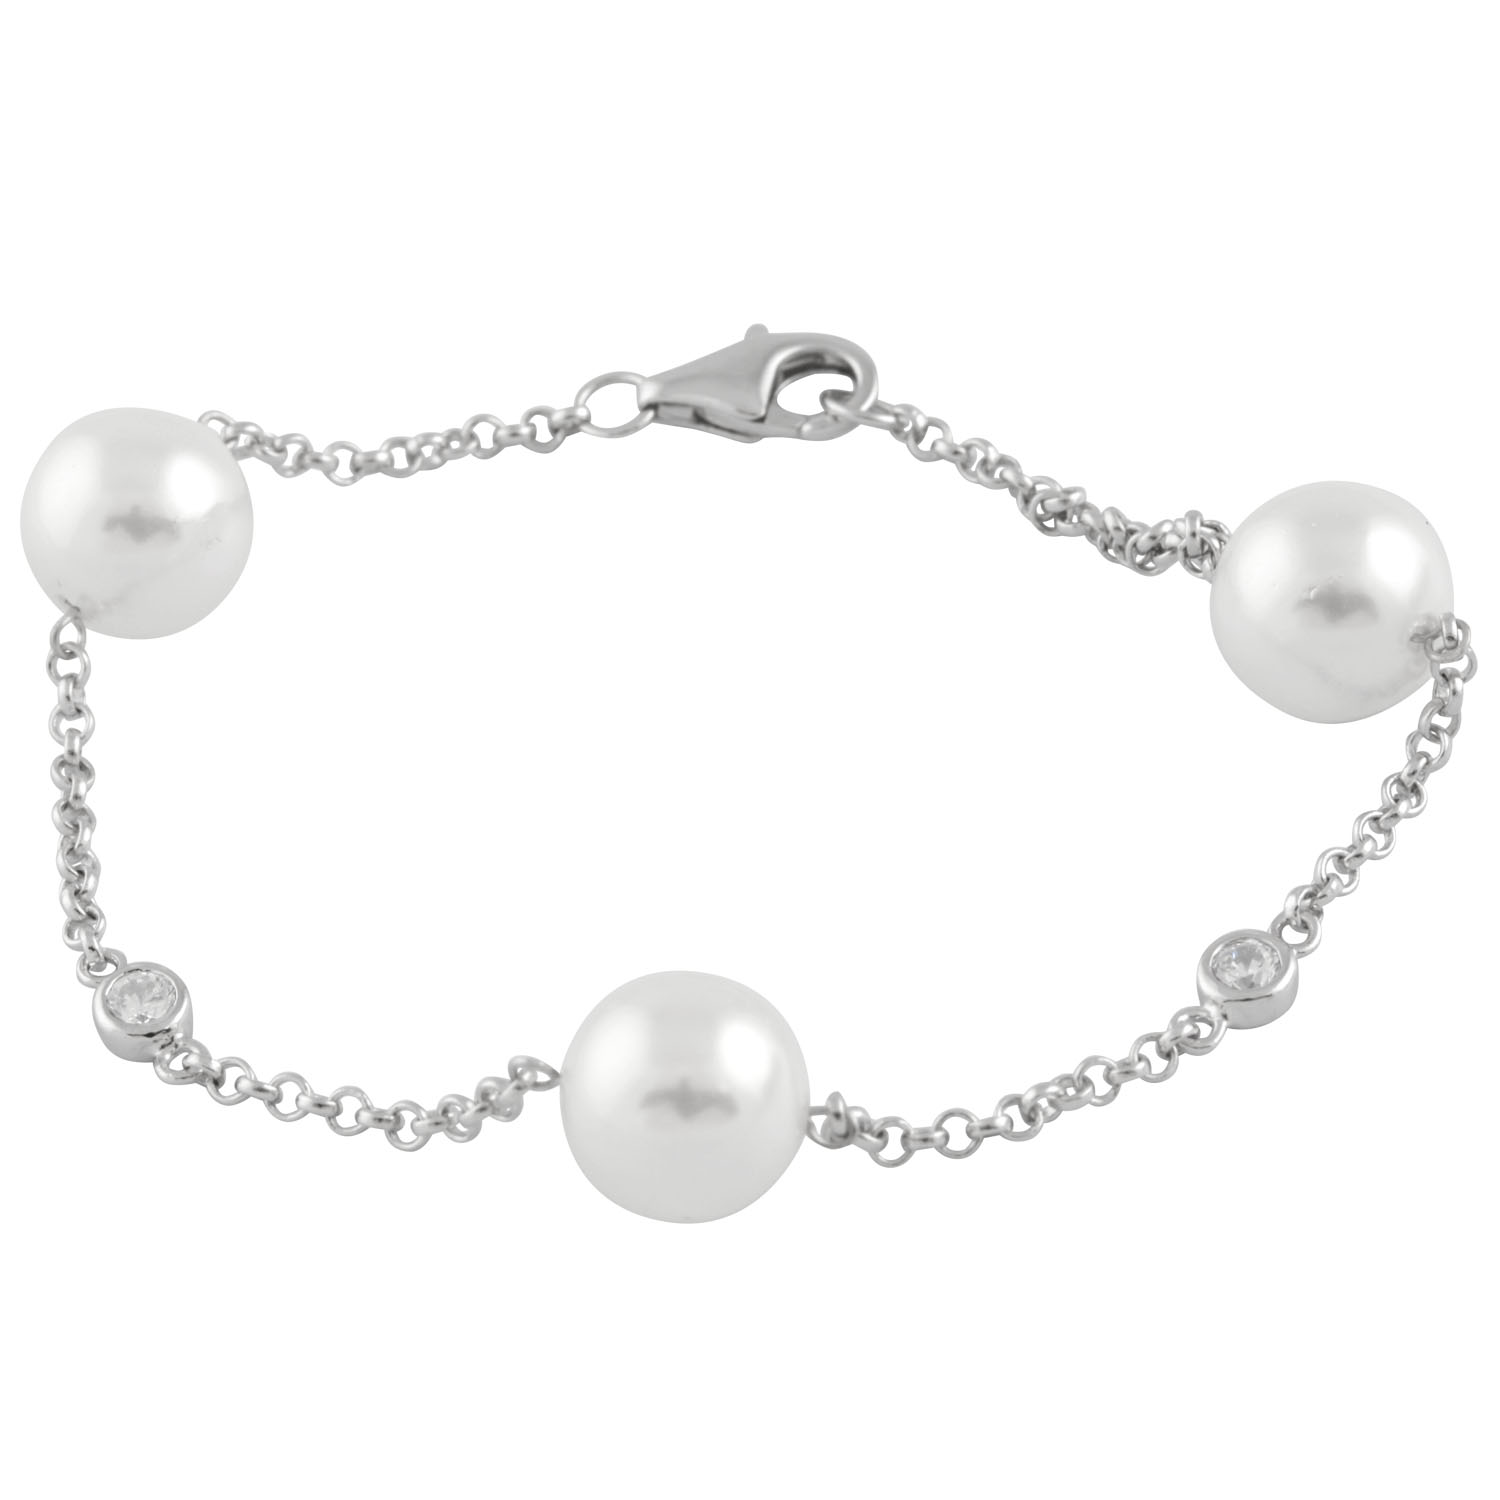 New ocean pearl bracelet